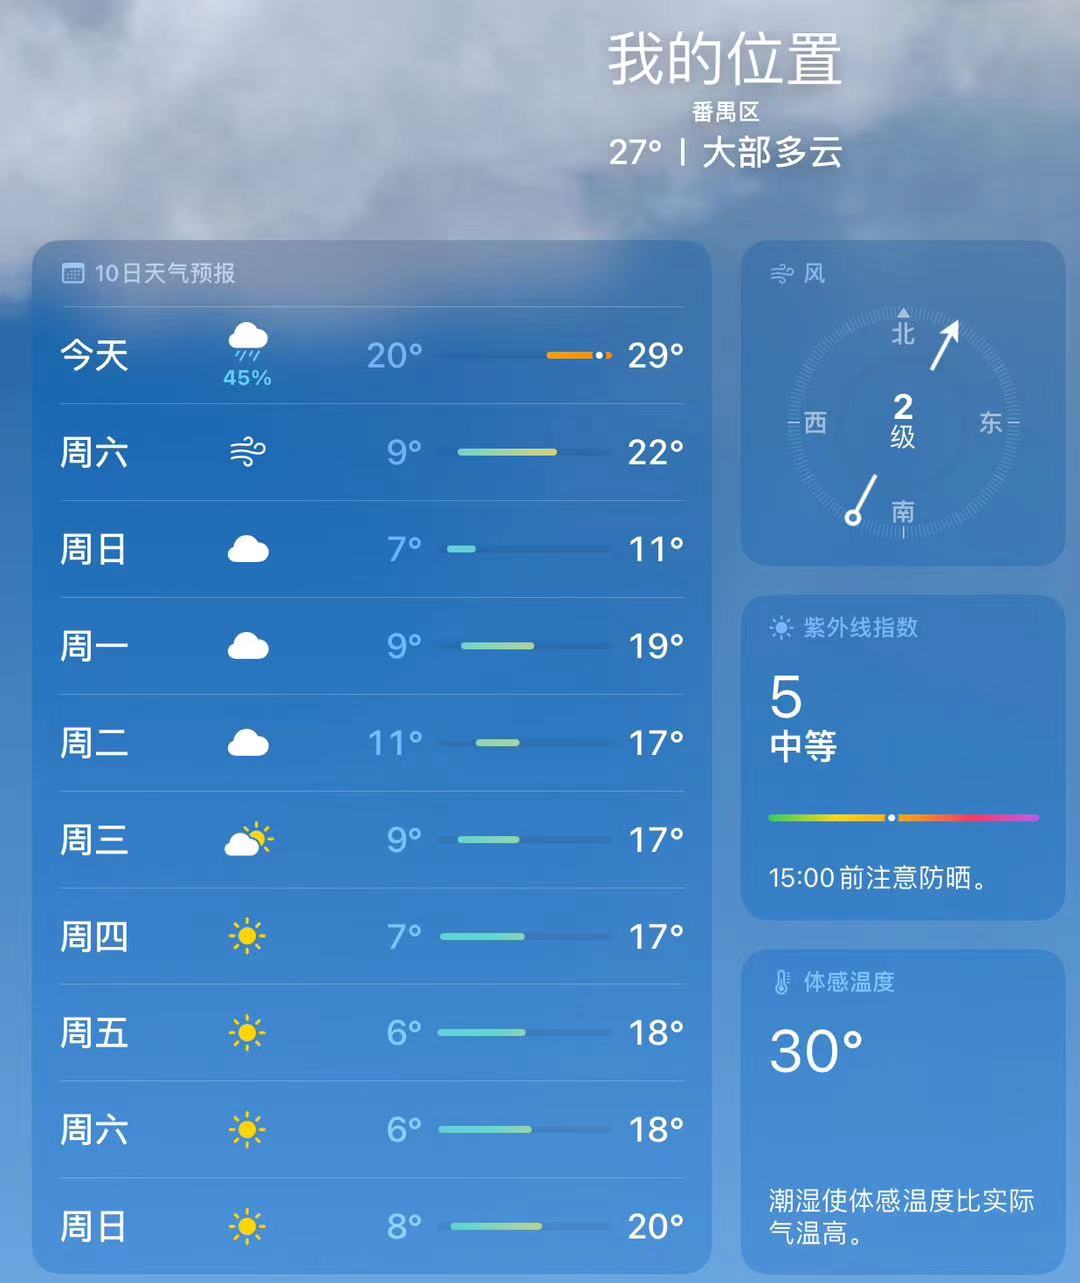 众所周知，广东没有秋天